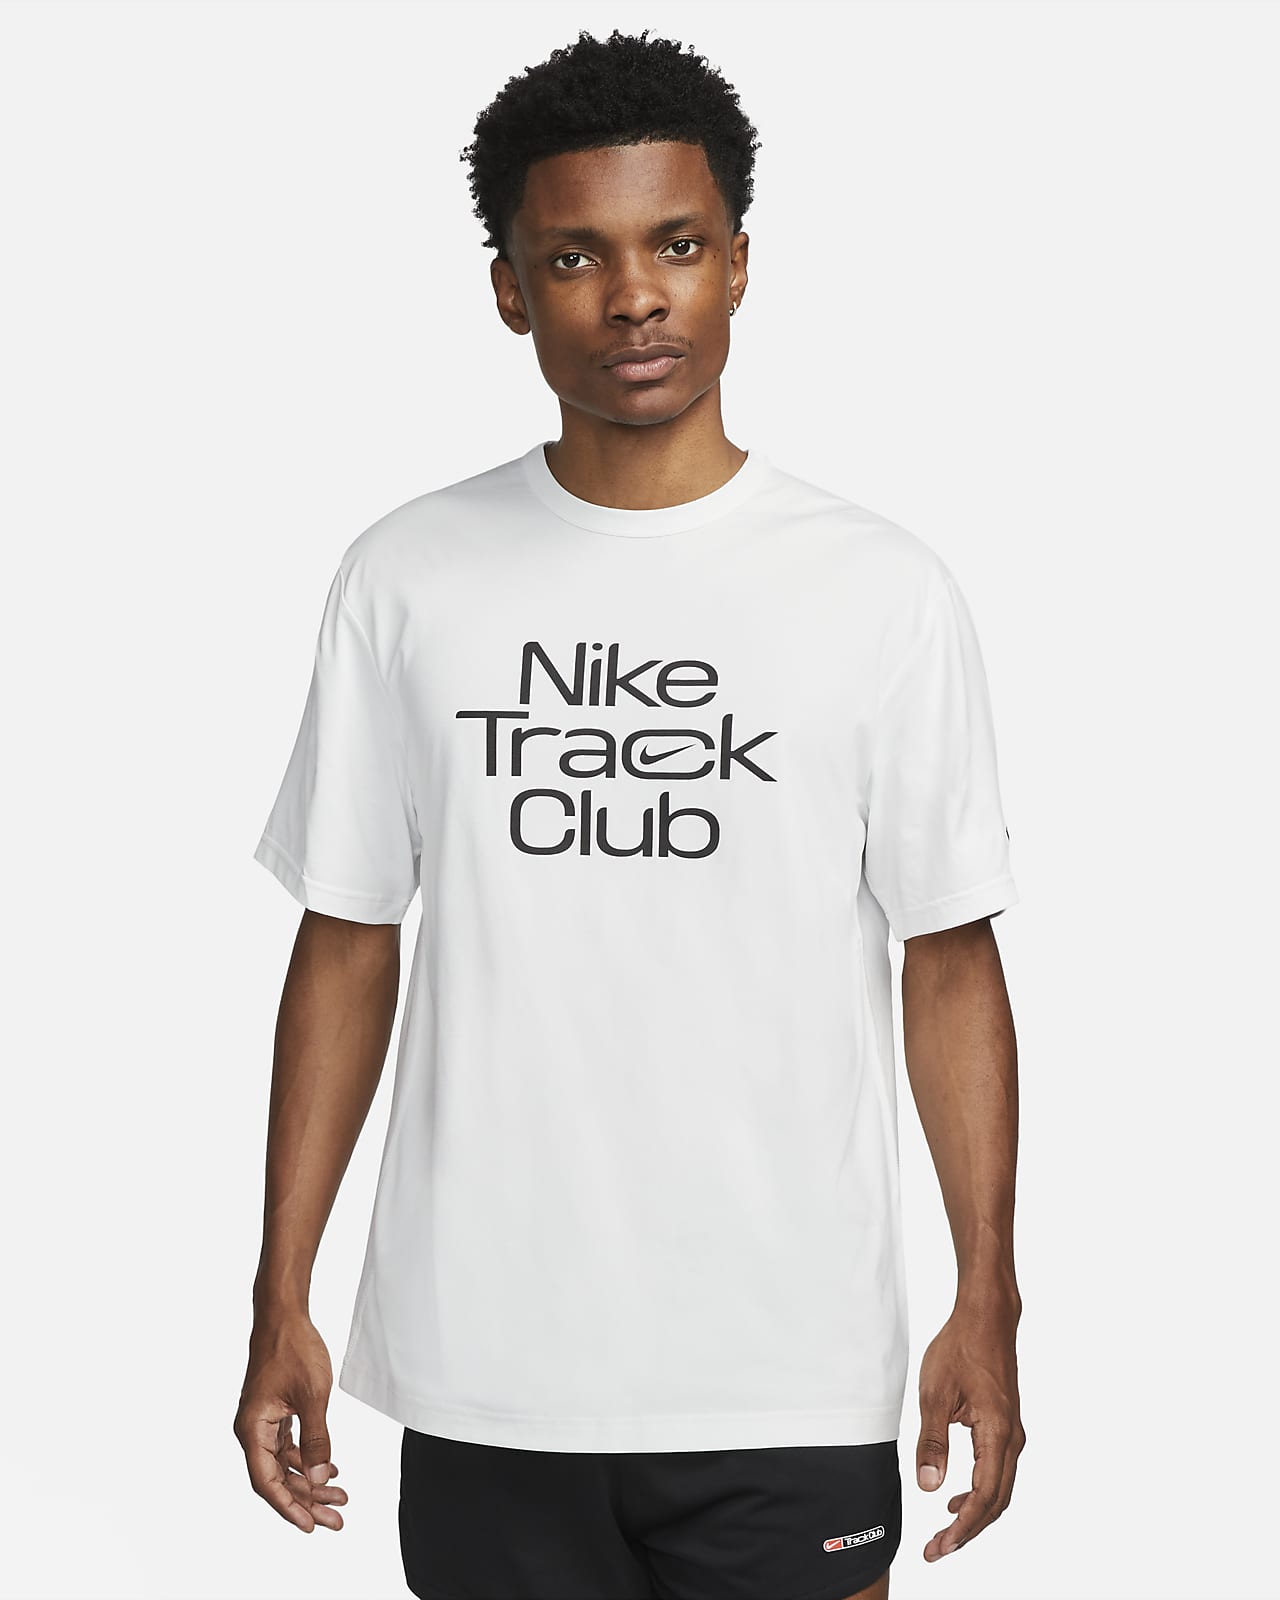 Pánské funkční tričko s krátkým rukávem Nike NY DF SS TOP černé